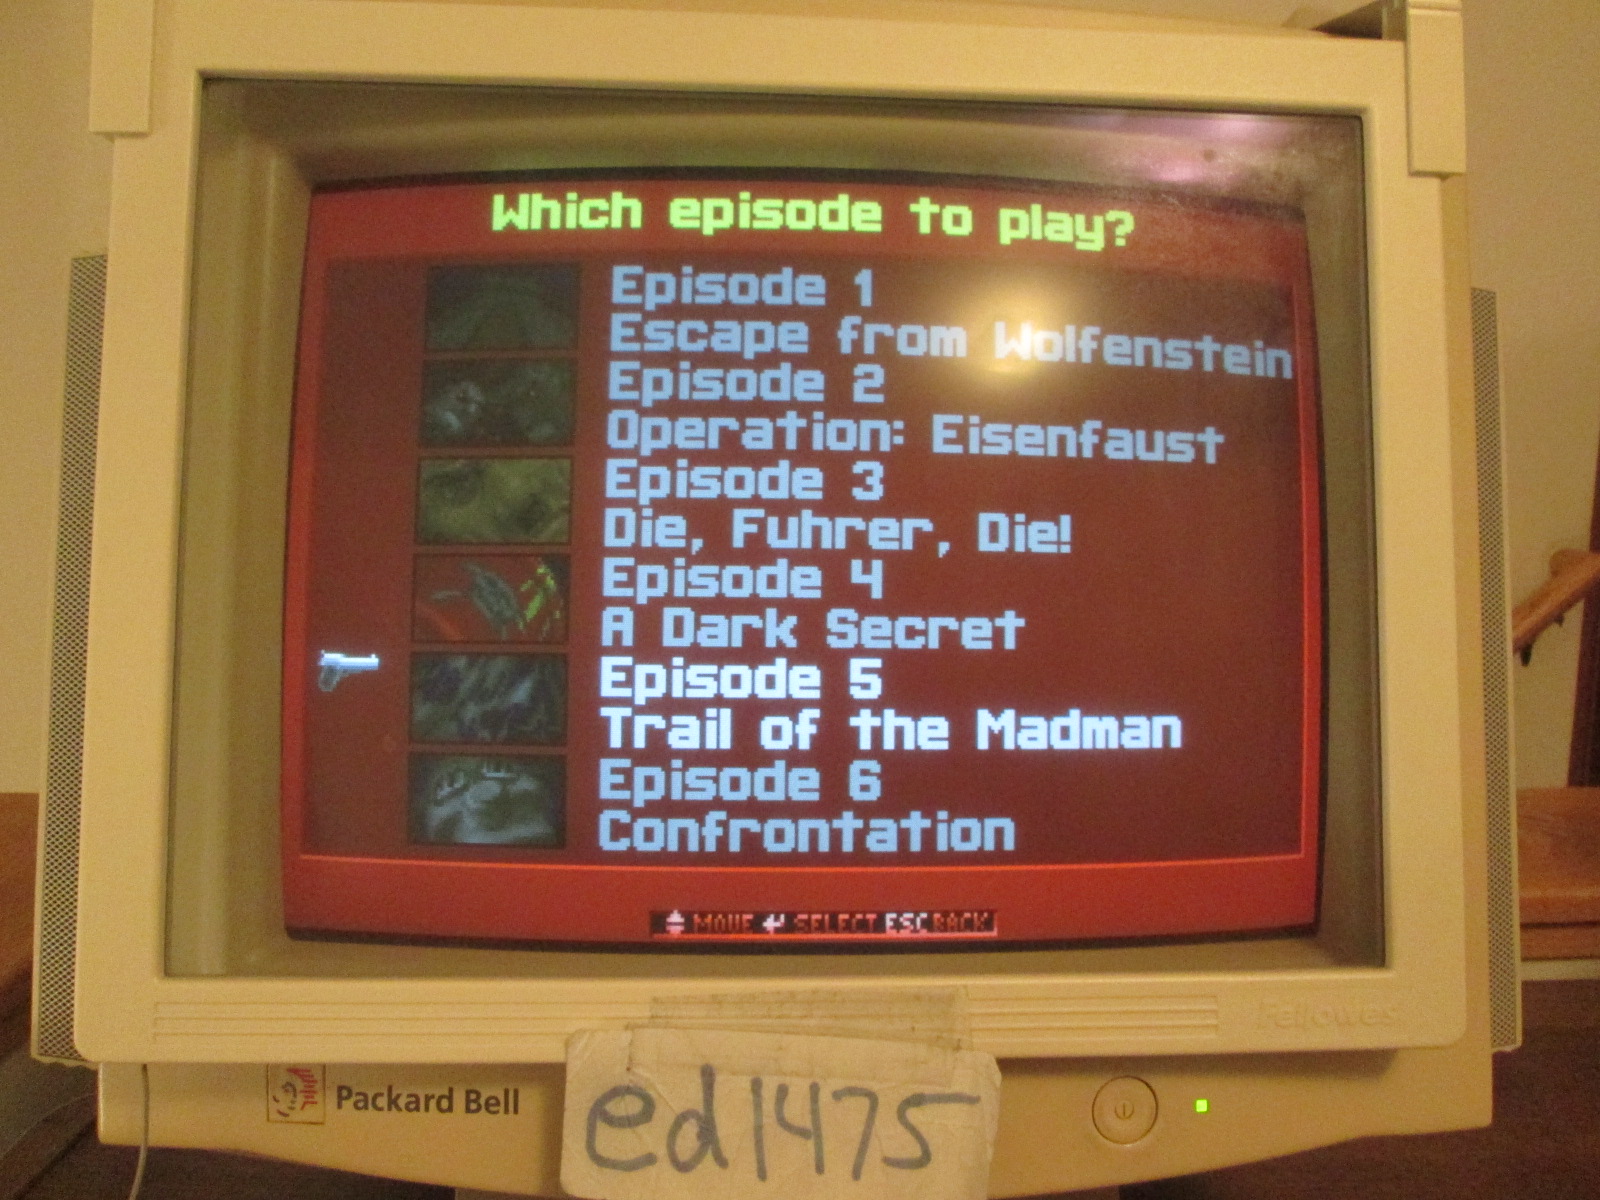 ed1475: Wolfenstein 3D: Episode 5: Trail of the Madman [Bring \